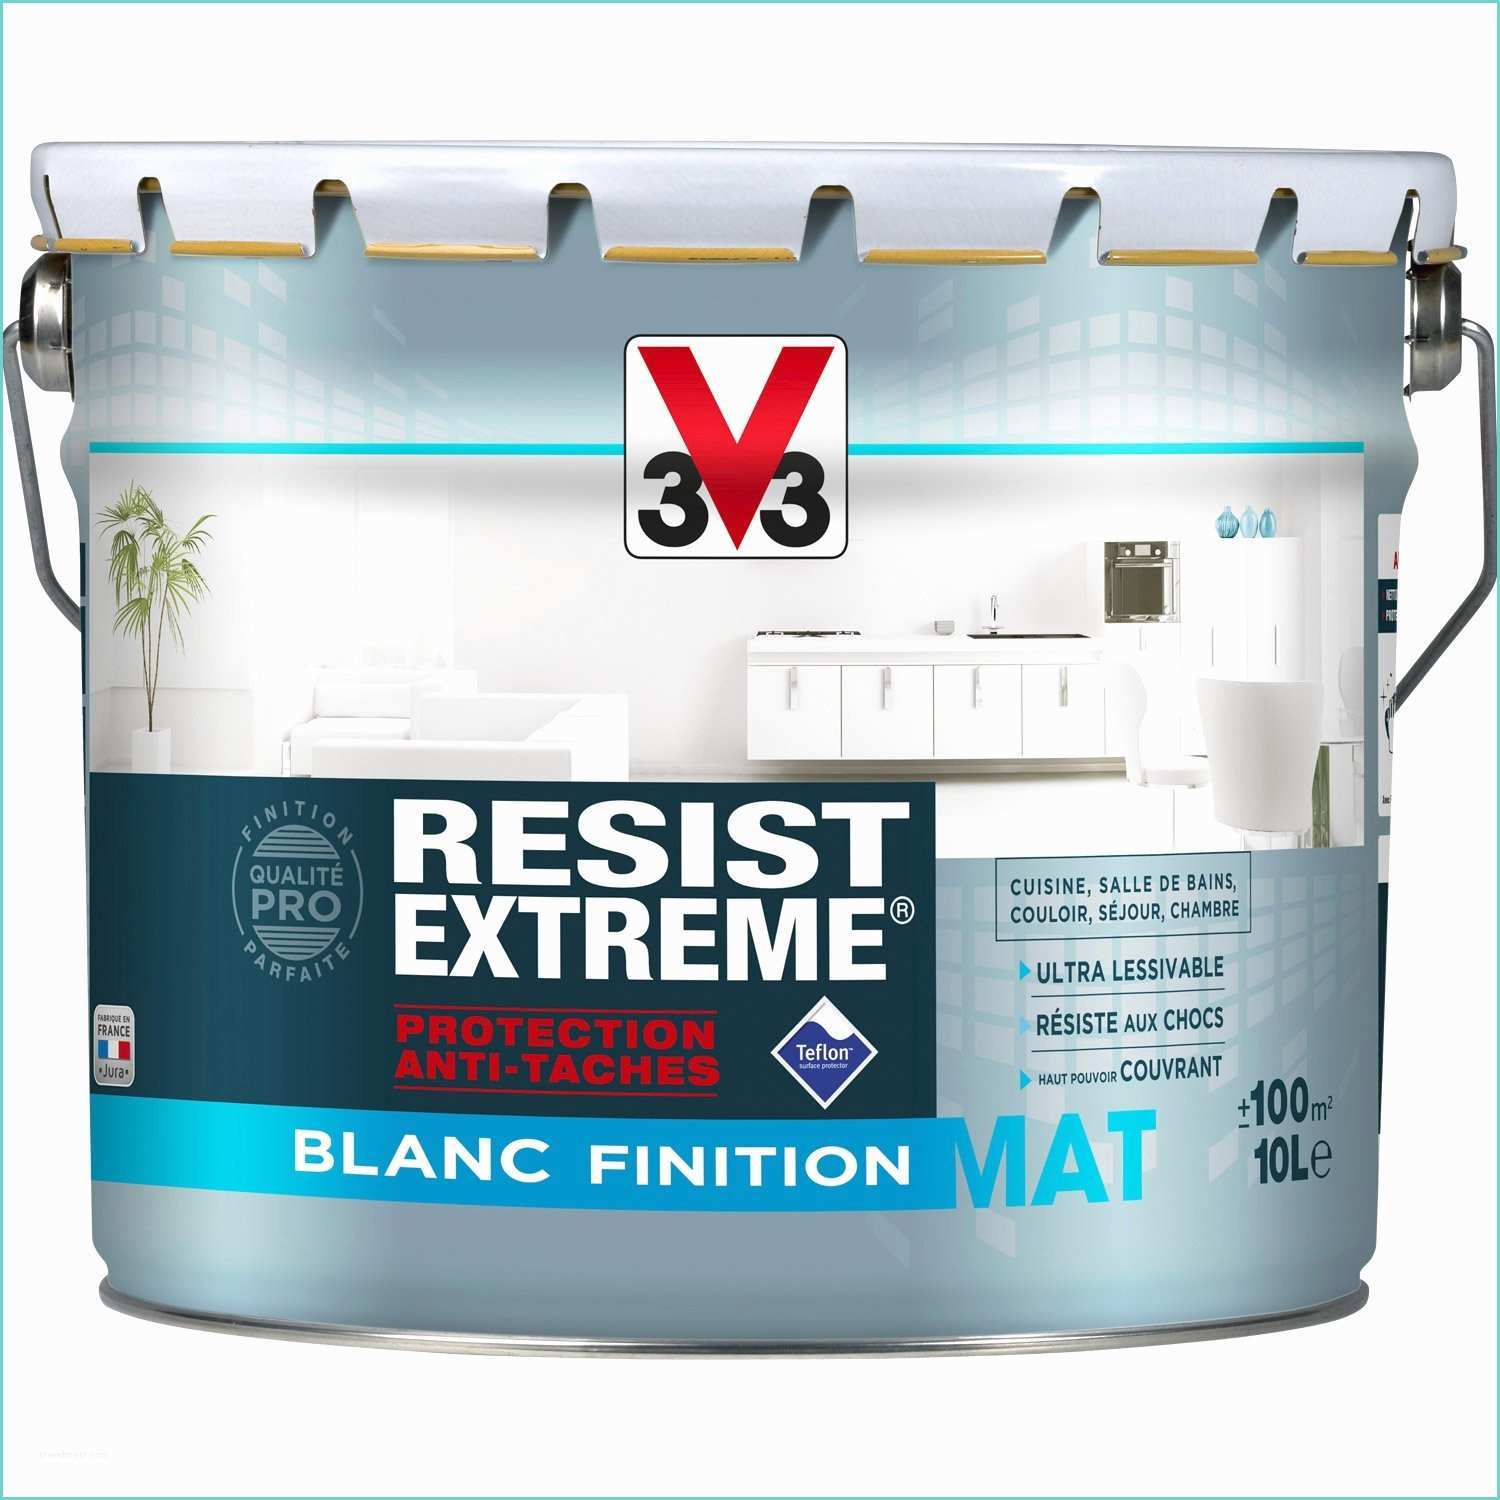 V33 Climat Extreme Peinture Blanche Mur Plafond Et Boiserie Resist Extrême